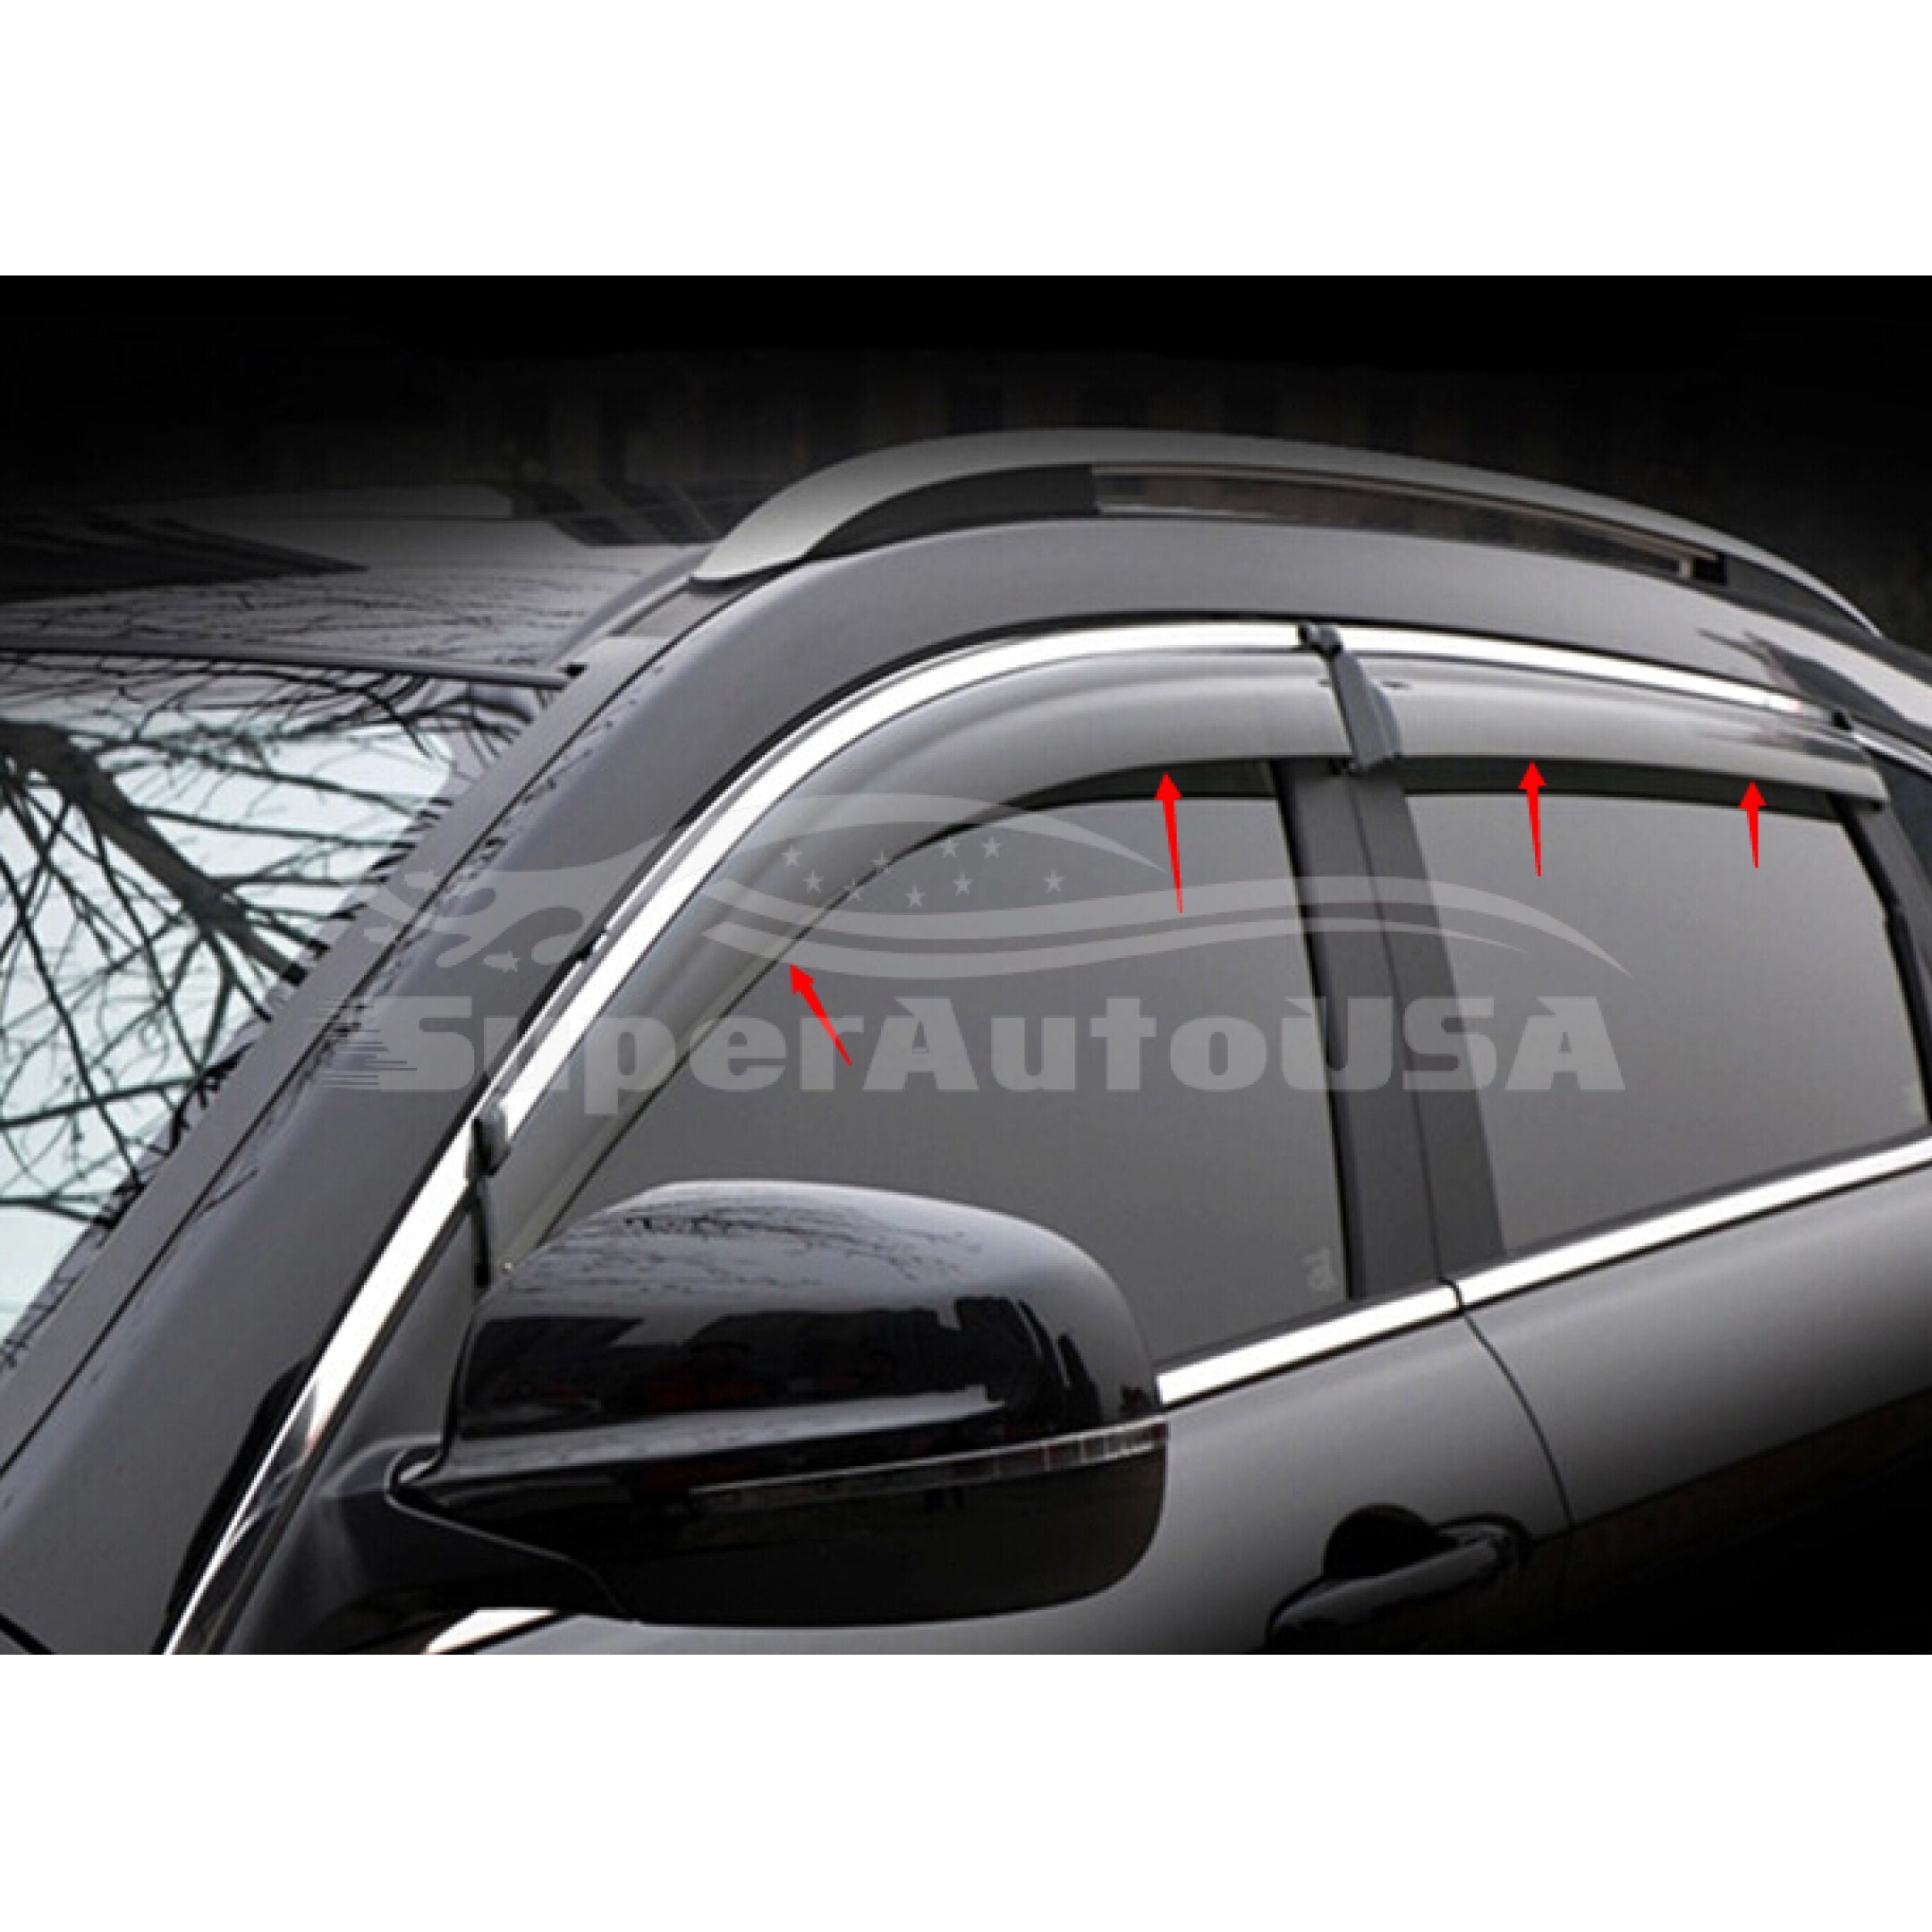 Ajuste 2014-2018 Subaru Forester Clip-On Chrome Trim Vent Window Viseras Rain Sun Wind Guards Shade Deflectors - 0